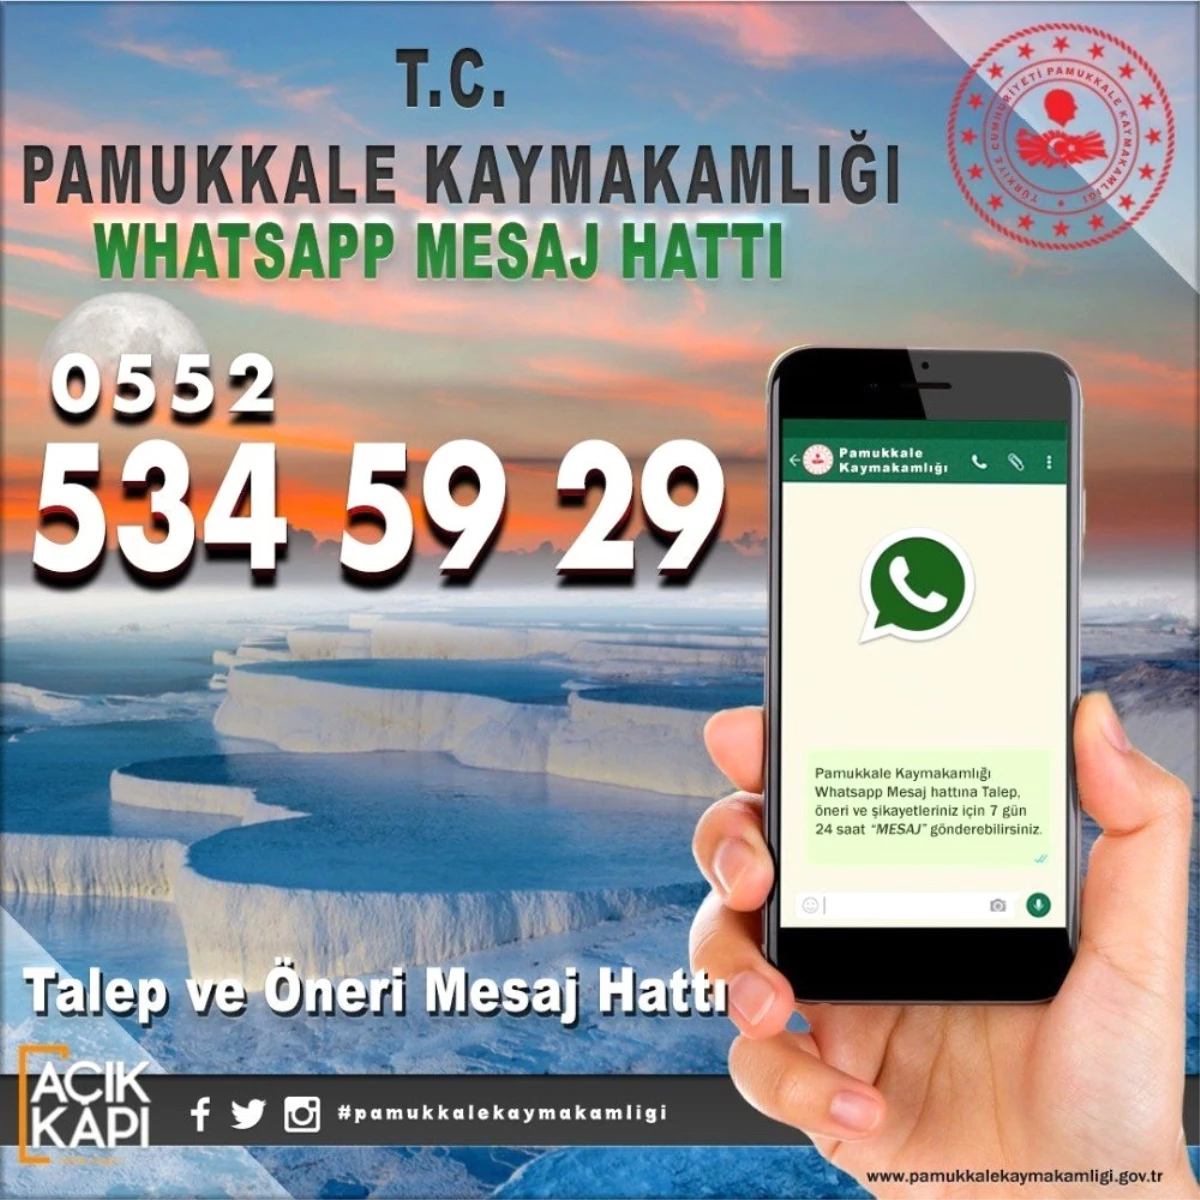 Kaymakamlıktan vatandaşlara özel Whatsapp hattı kuruldu